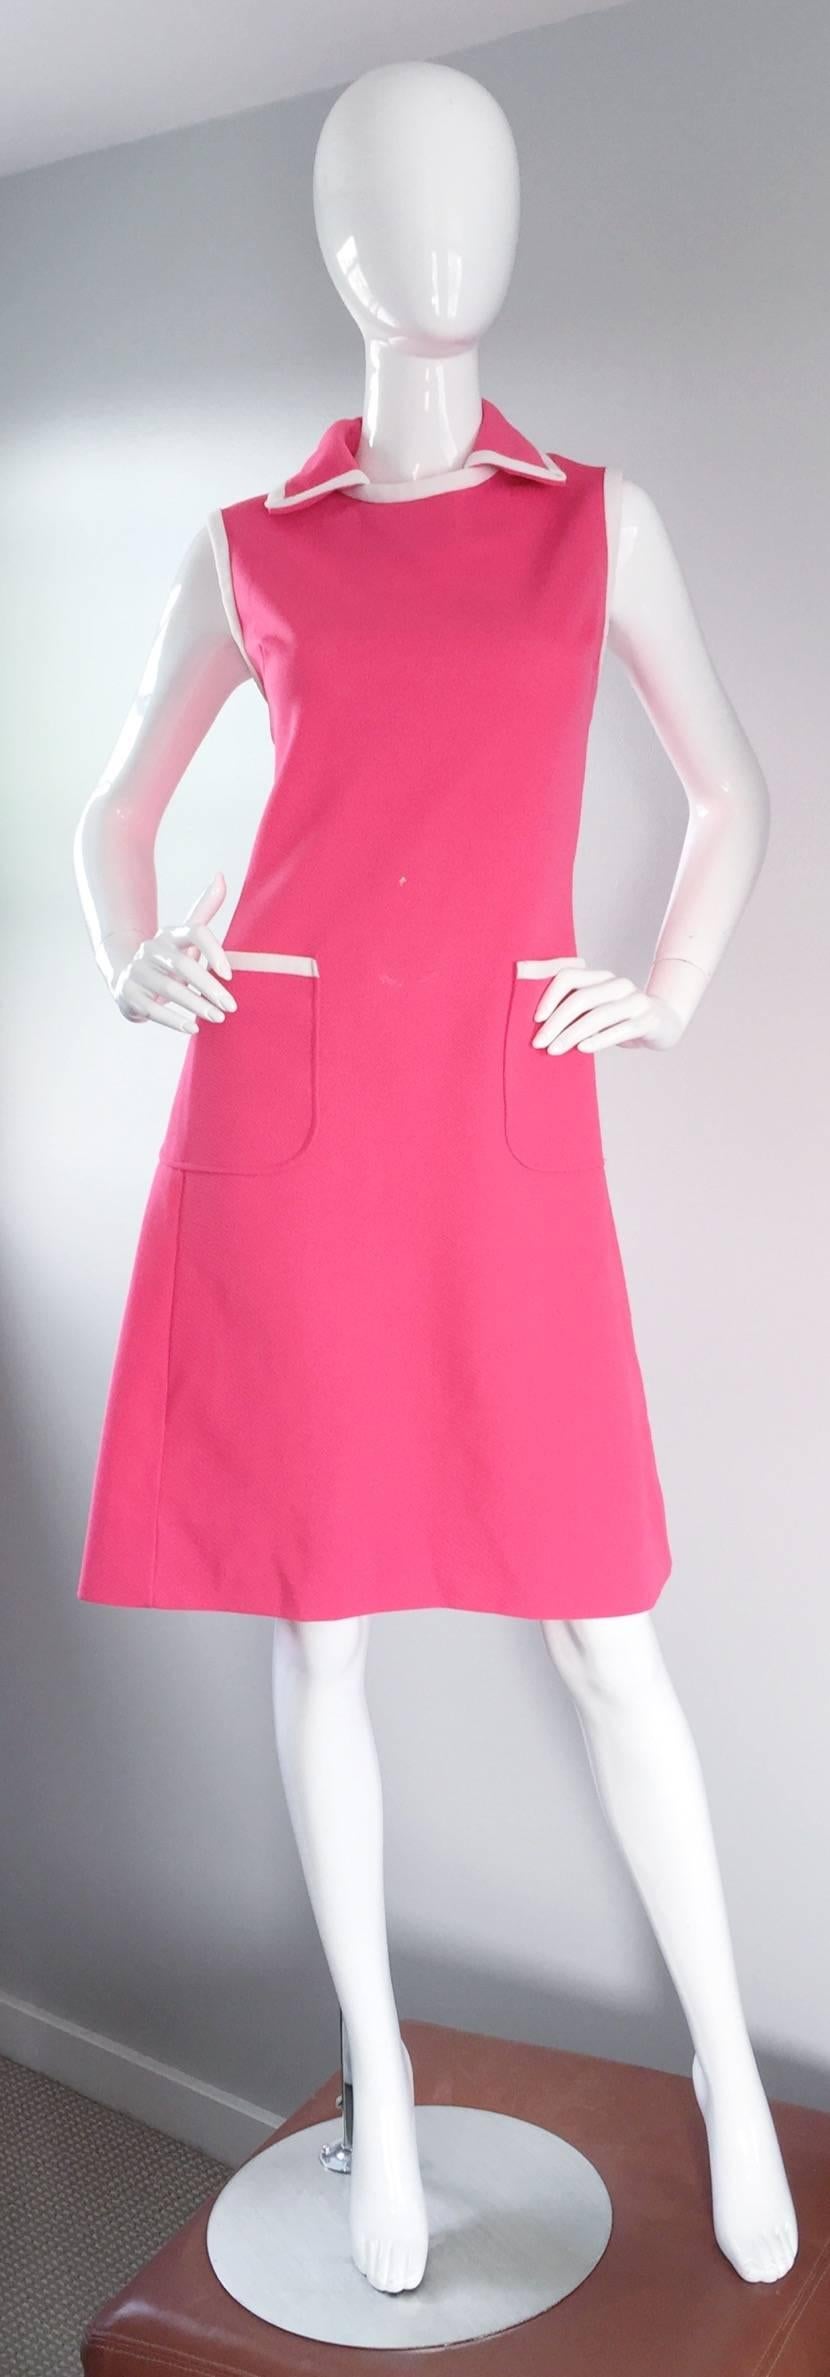 Parfaite robe A-Line vintage PLUS SIZE I MAGNIN rose chaud ! Couleur rose vif, avec passepoil blanc au col, aux poignets et aux deux poches avant. La forme A-Line est très flatteuse, et extrêmement confortable - très tolérante ! Parfait avec des